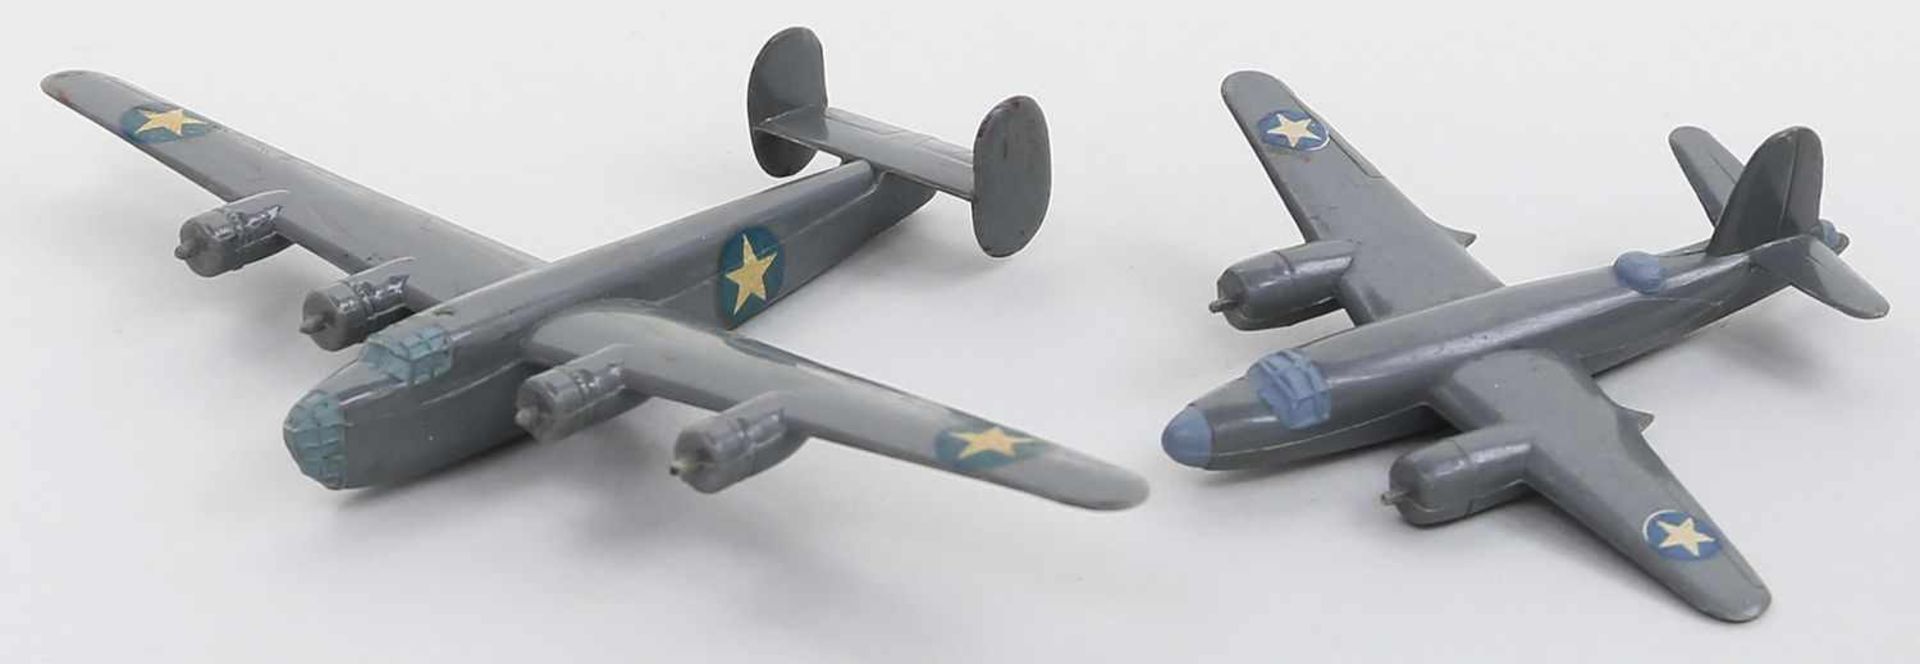 2 Flugzeuge, Wiking.USA Nr. 18 und 11. Unvollständig. 1940er Jahre.